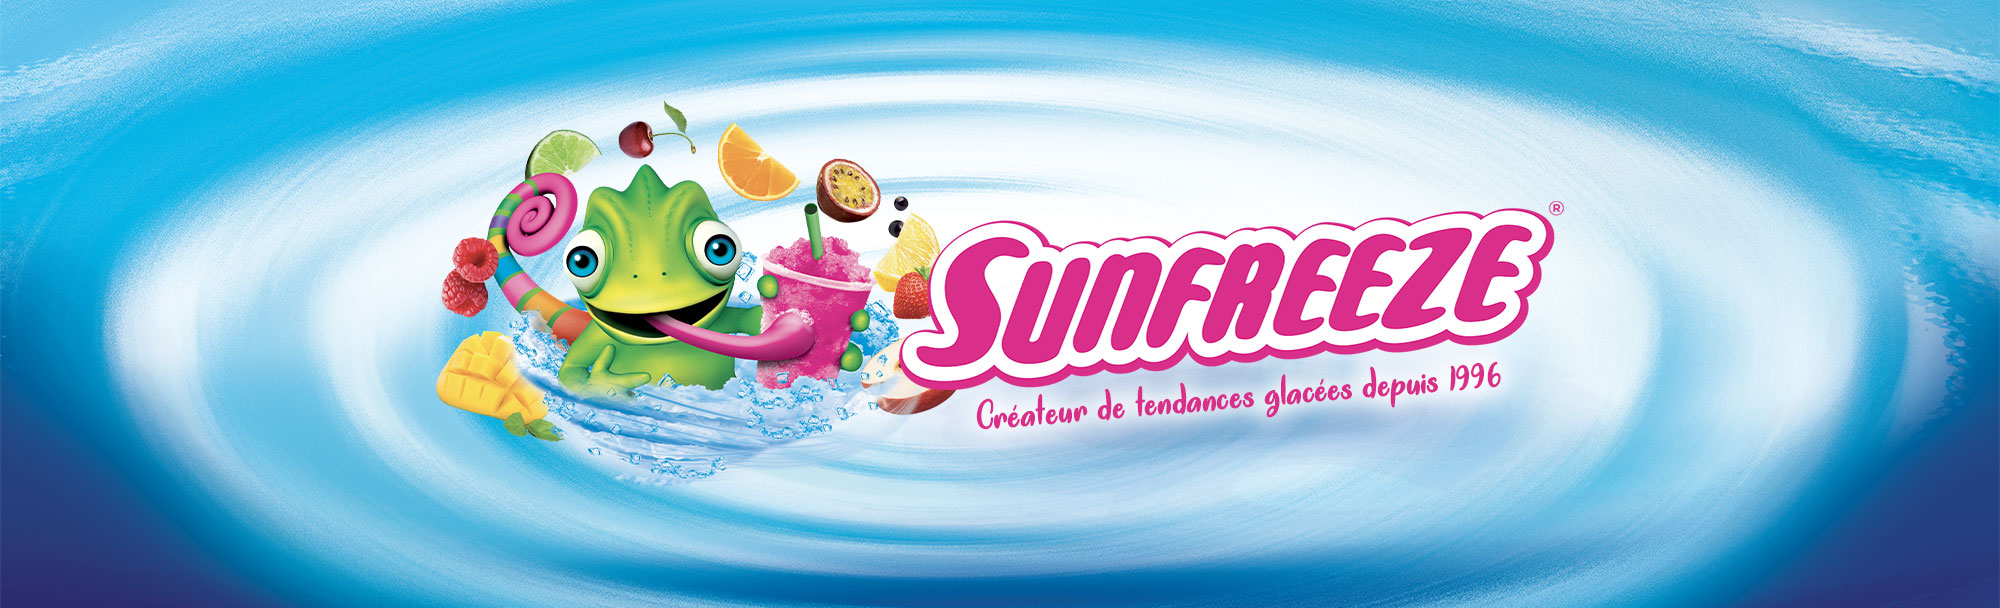 Sunfreeze - Créateur de tendances glacées depuis 1996